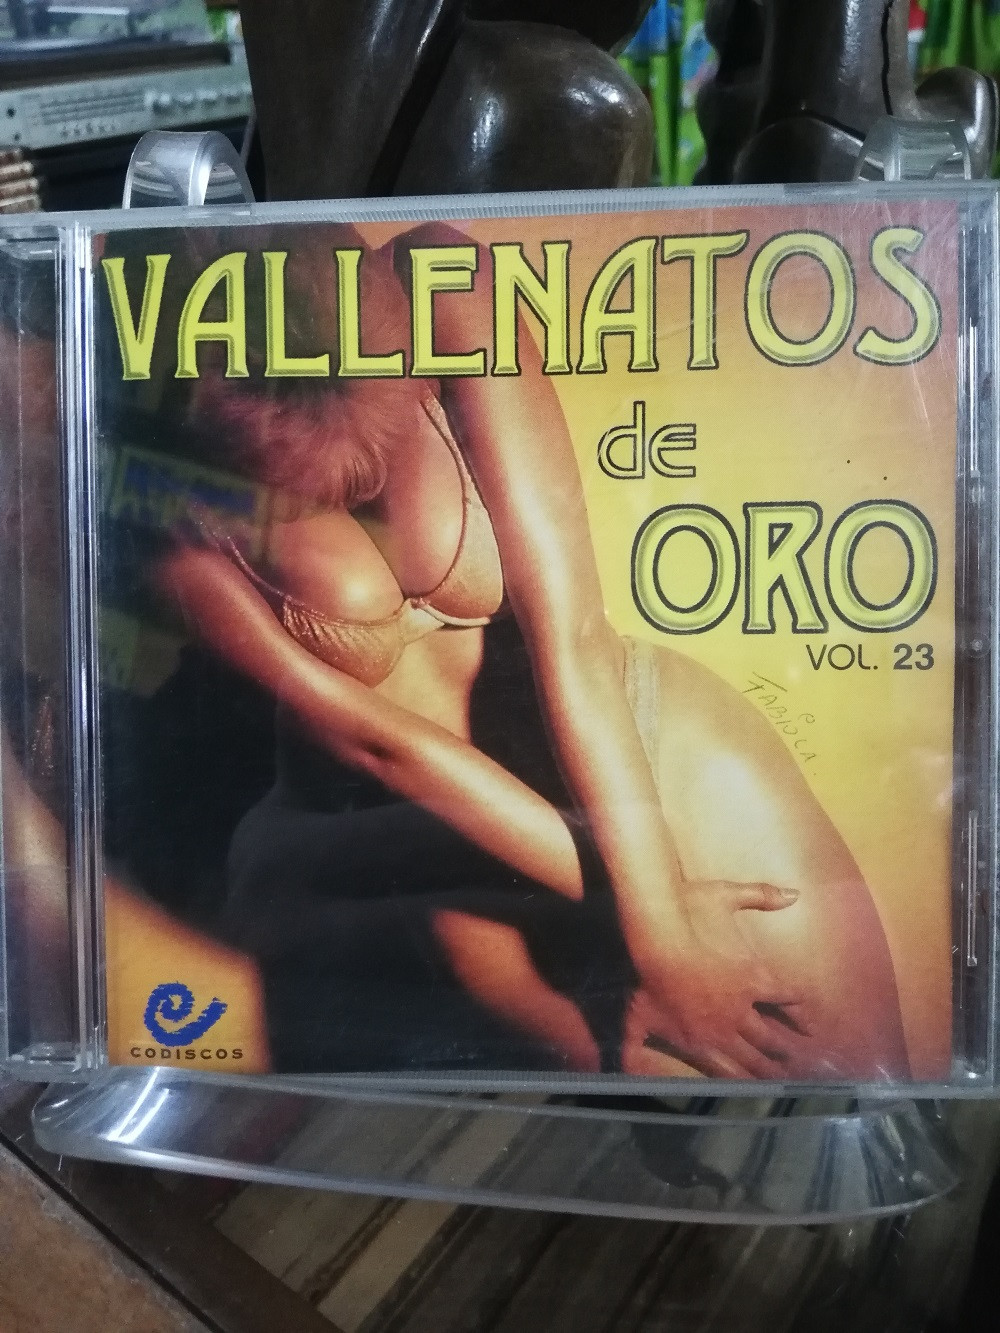 Imagen CD VALLENATOS DE ORO - VALLENATOS DE ORO VOL. 23